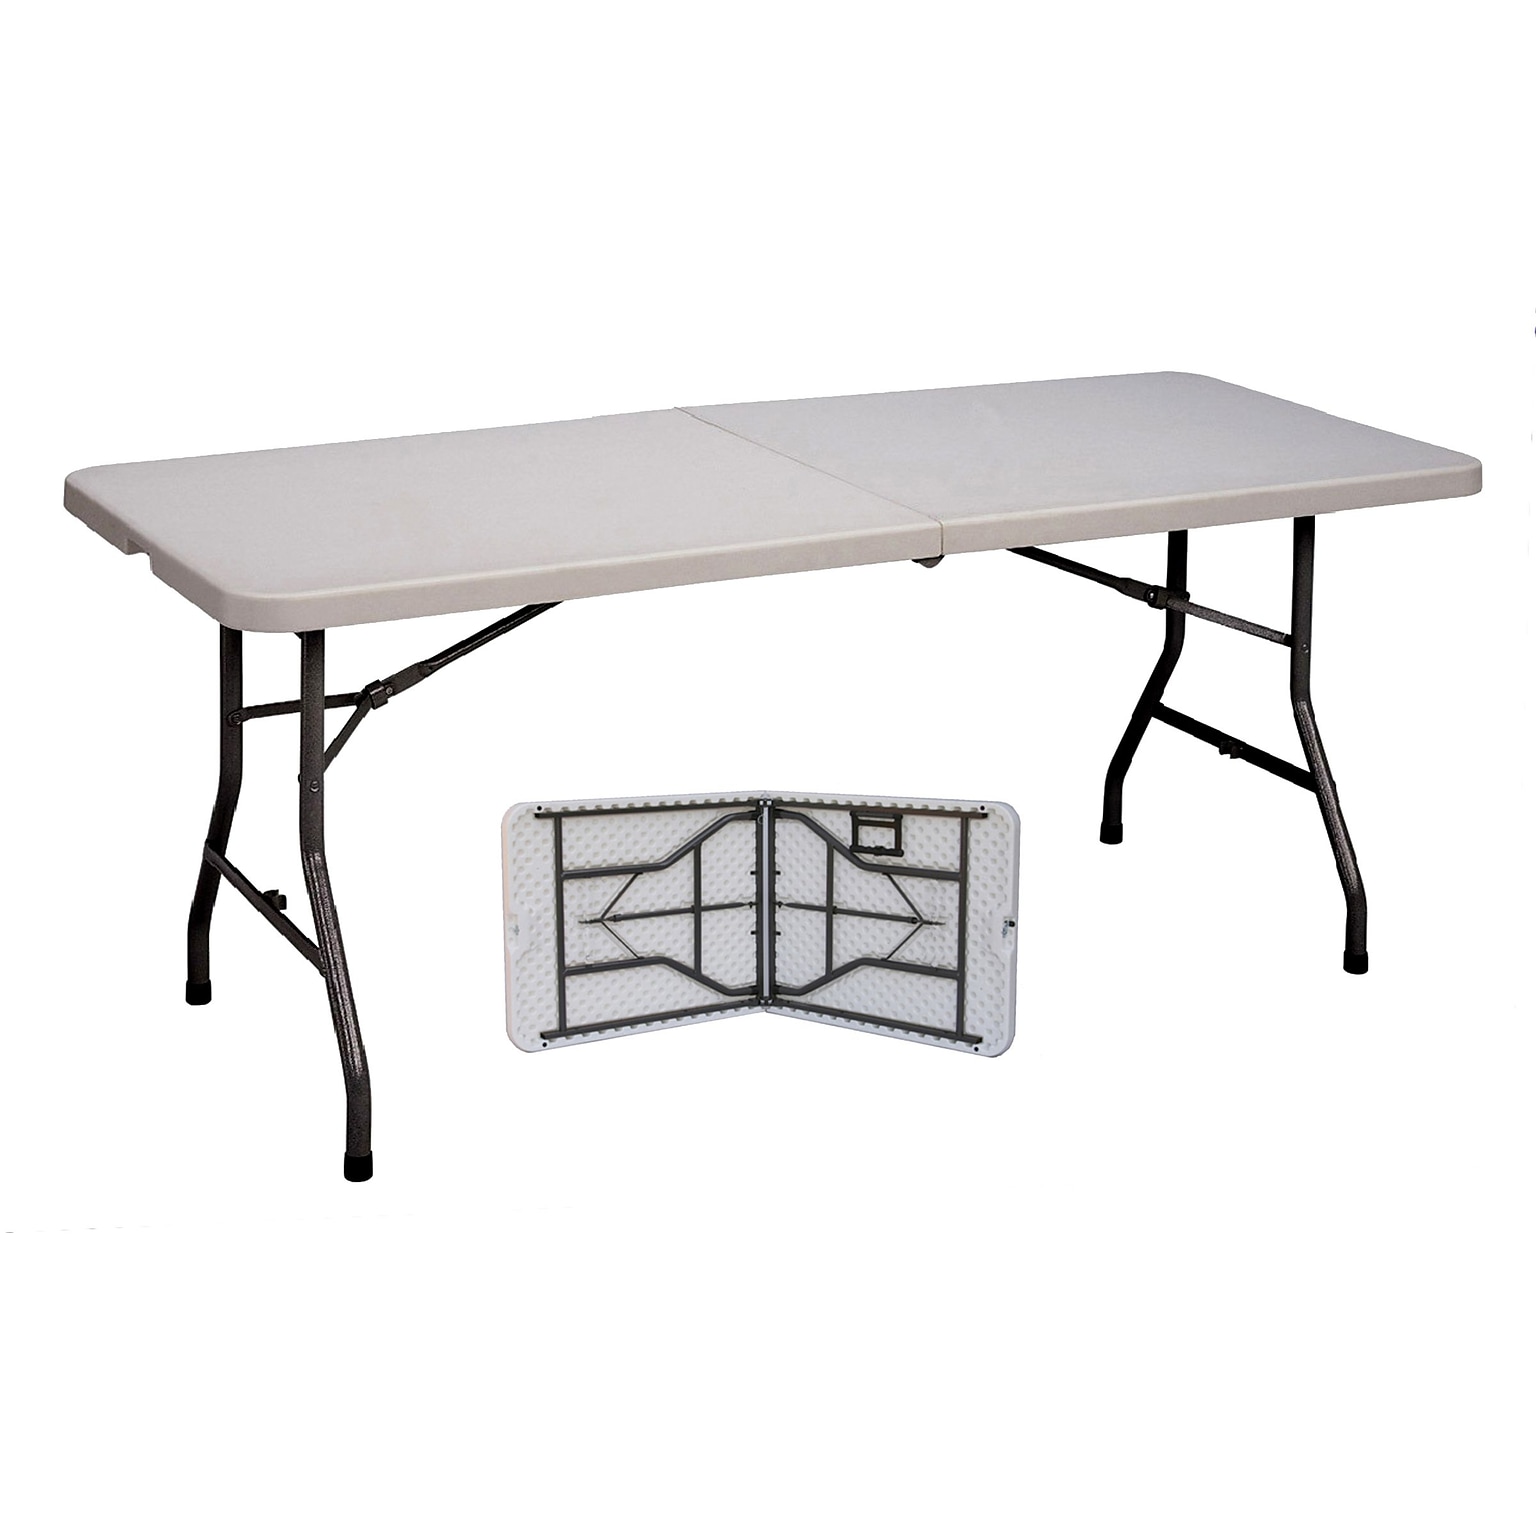 Correll® 30D x 72L Plastic Fold In Half Table; Gray Granite Top